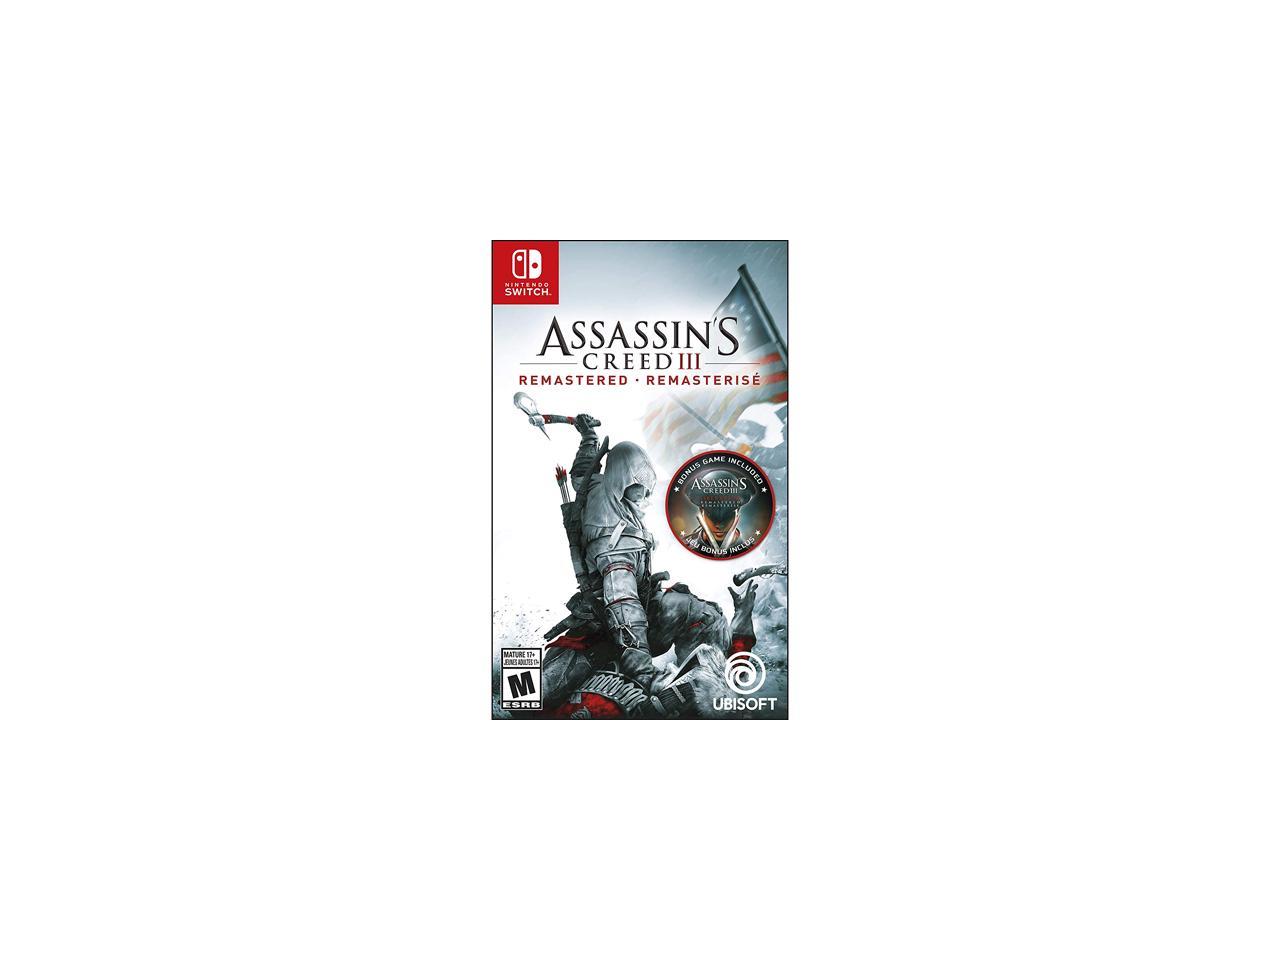 Assassins Creed 3 Nintendo Switch. Ассасин Крид 3 Ремастеред Нинтендо свитч. Assassin's Creed III Remastered Нинтендо. Ассасин Крид 3 на Нинтендо свитч.